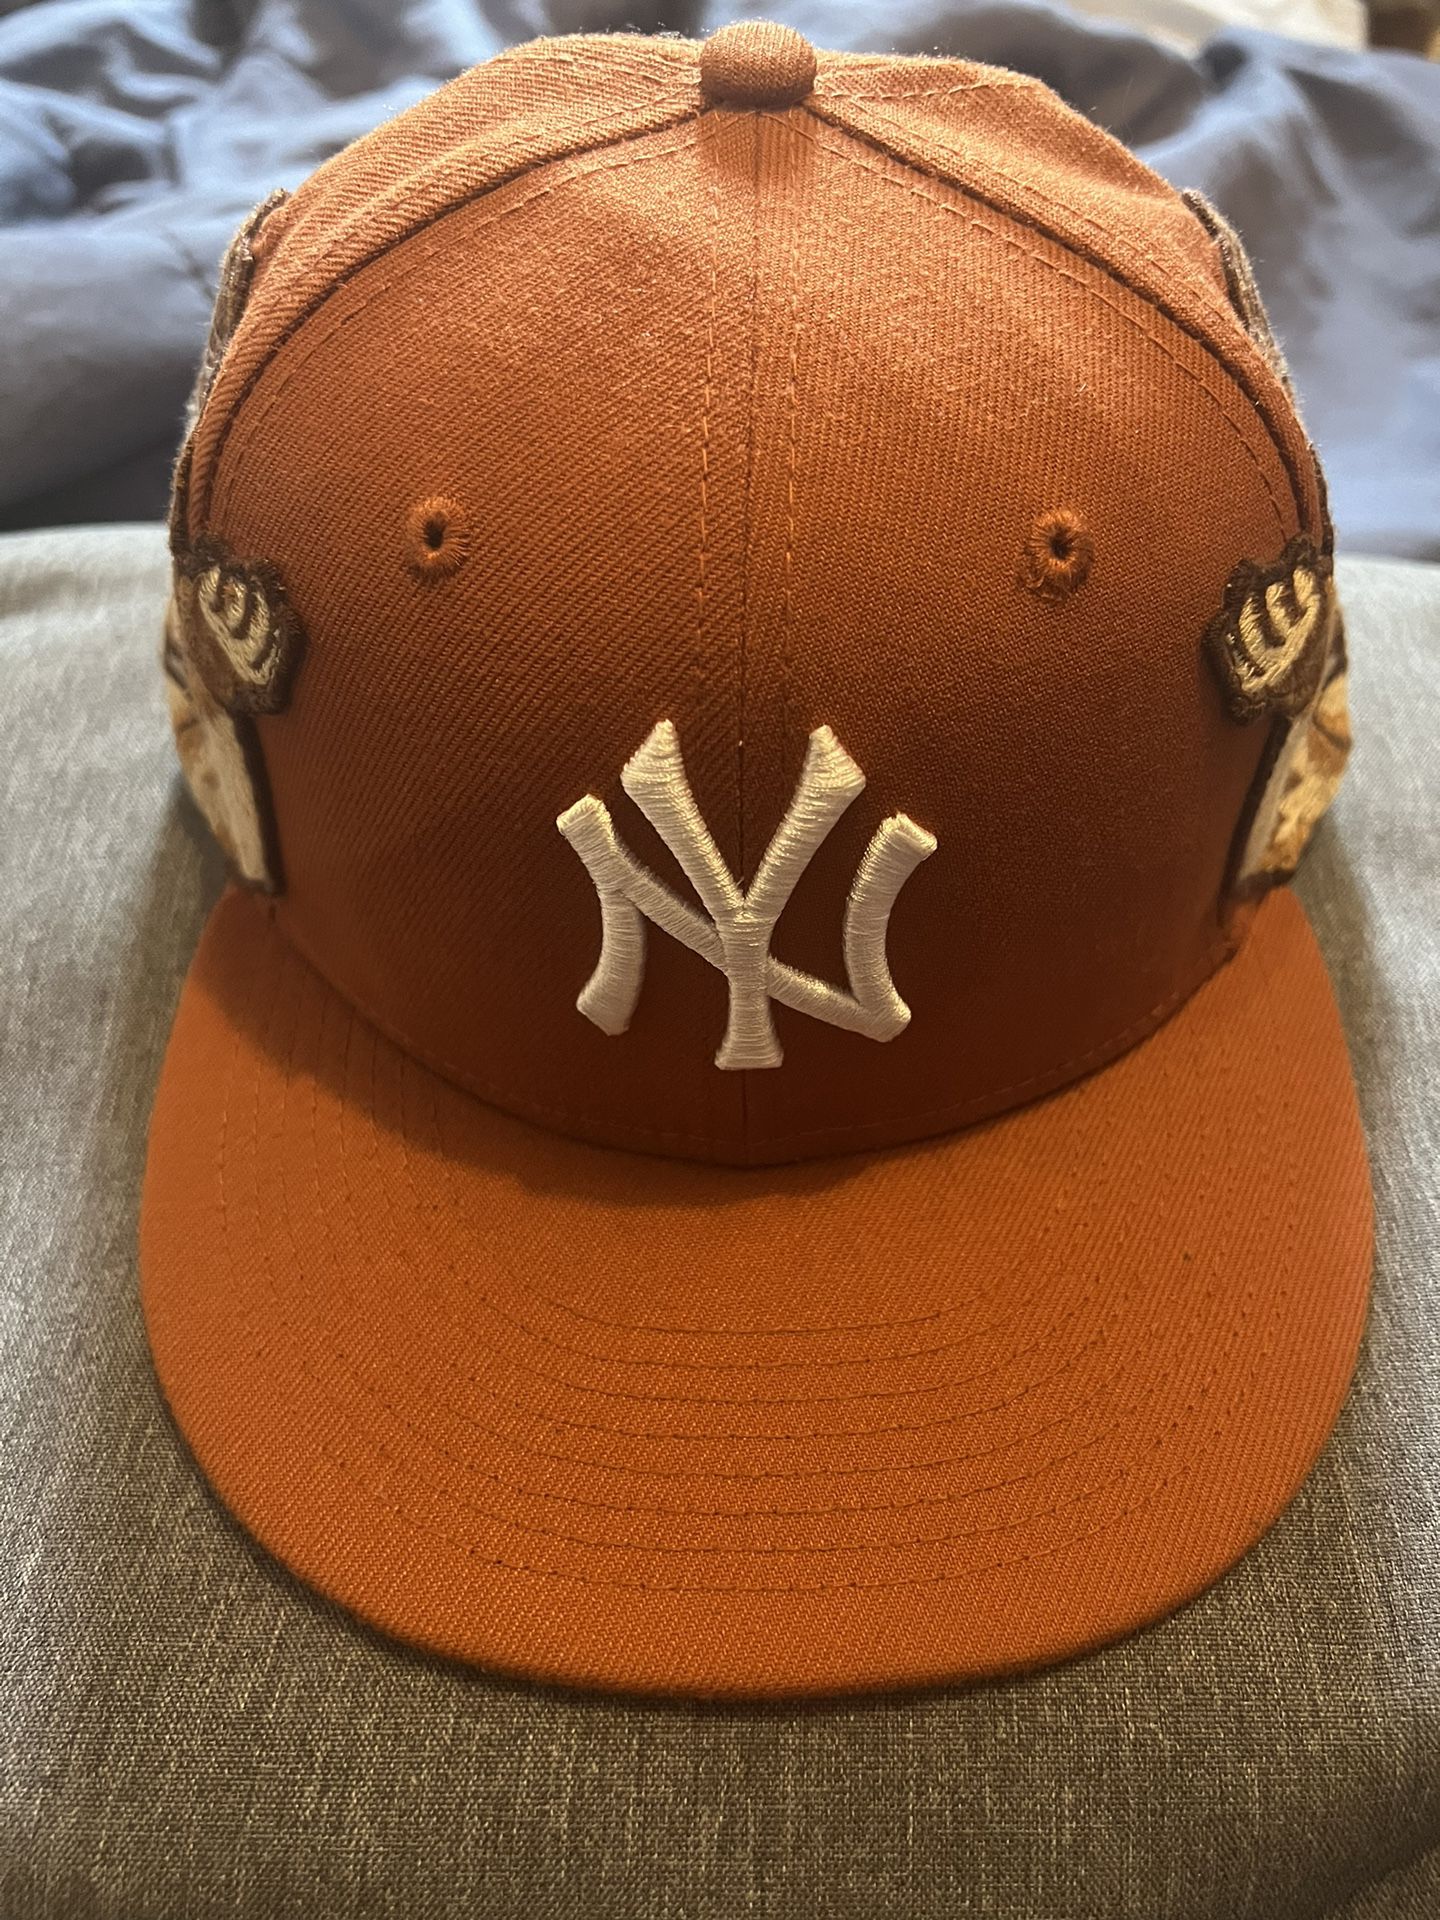 Jon Stan Yankees Hat